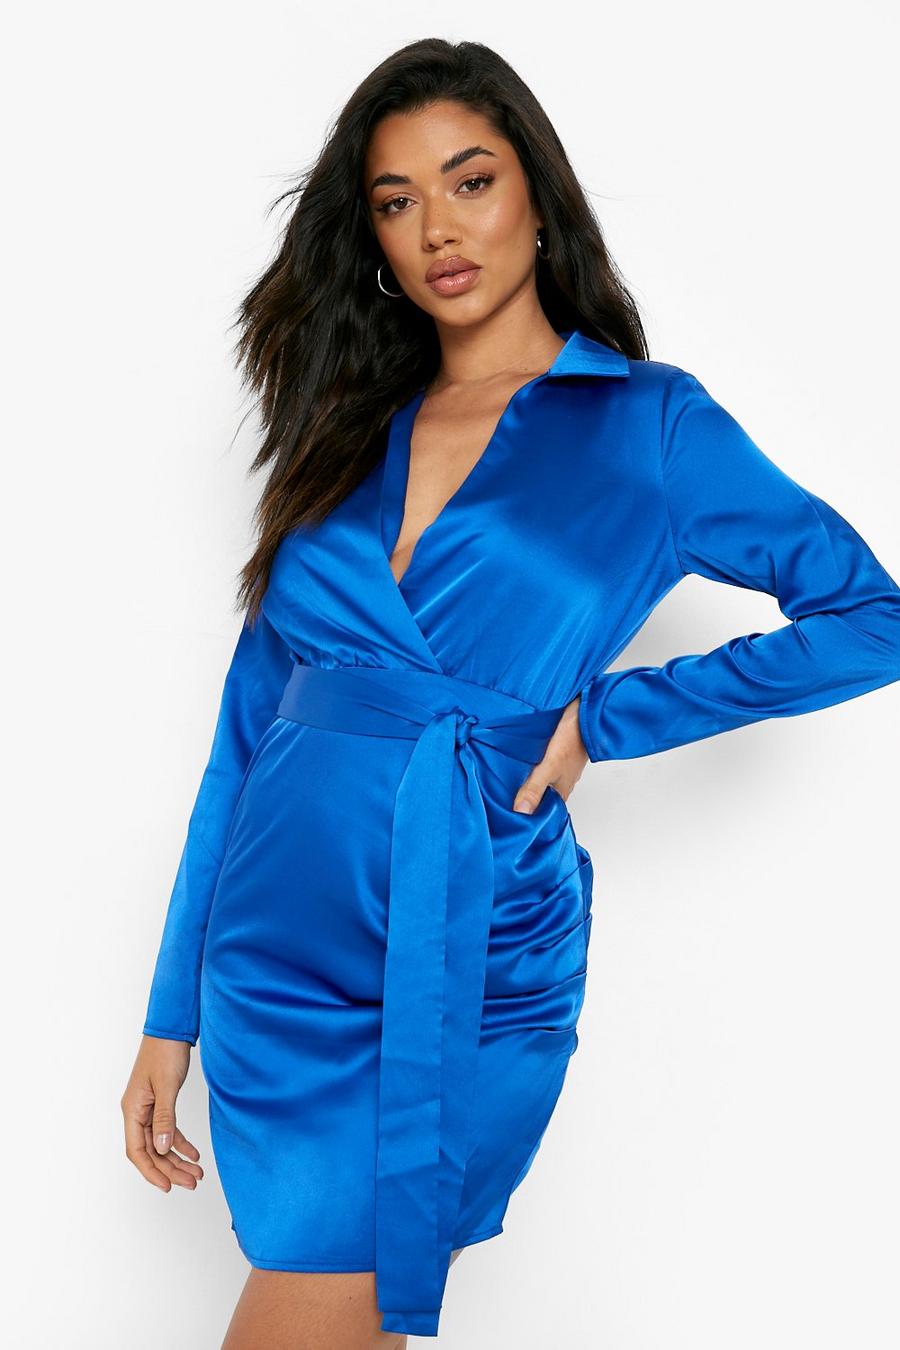 Cobalt blue Satinklänning i omlottmodell